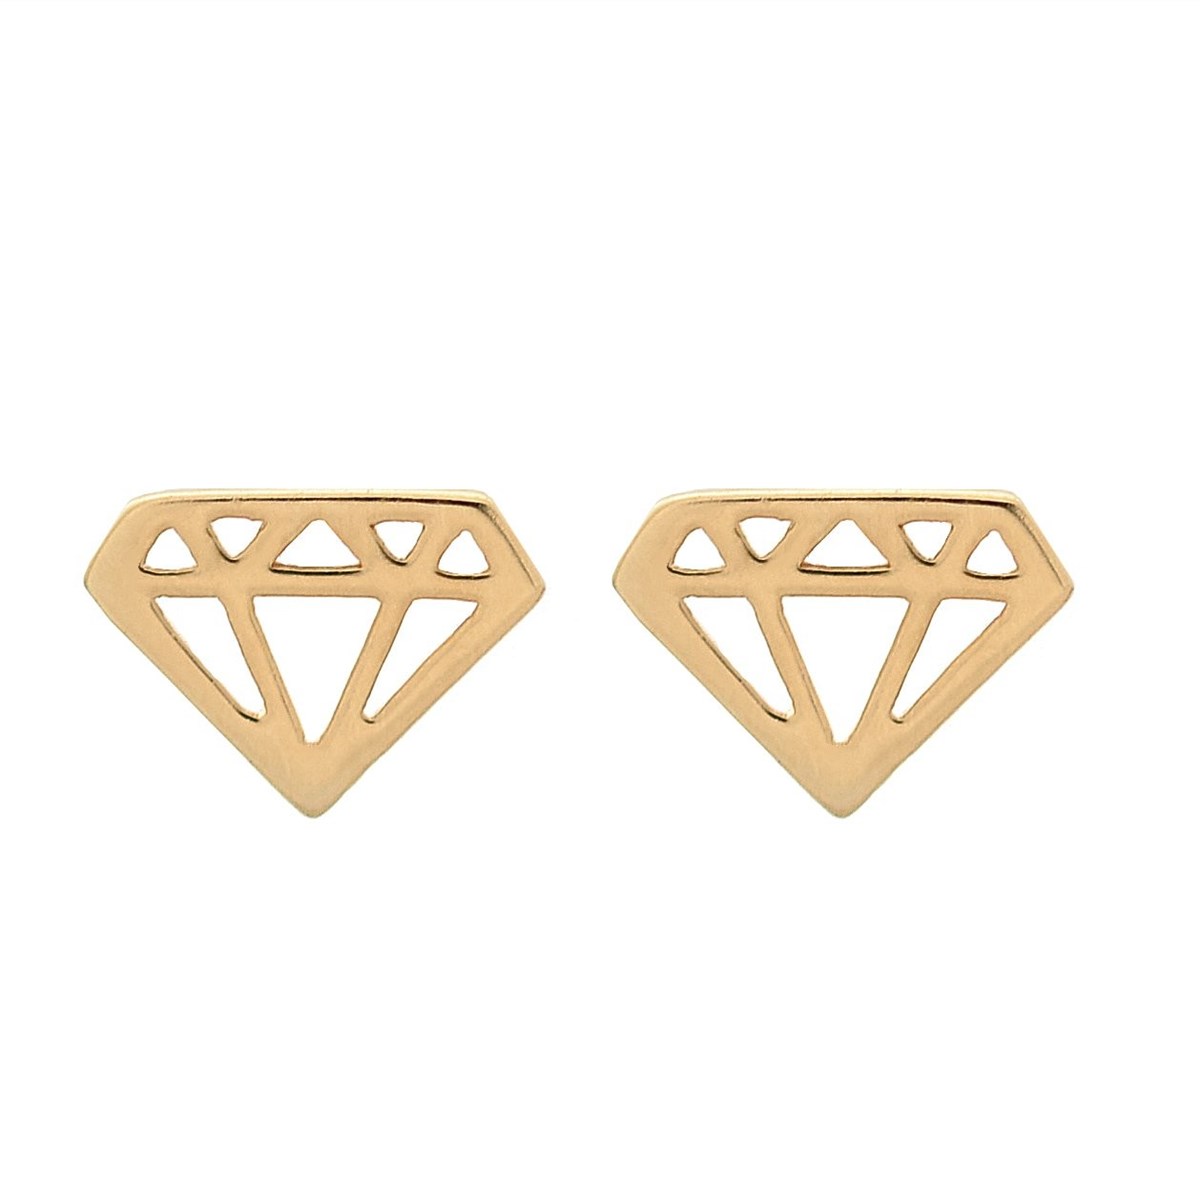 Boucles d'oreilles motif diamant forme ajourée Plaqué or 750 3 microns